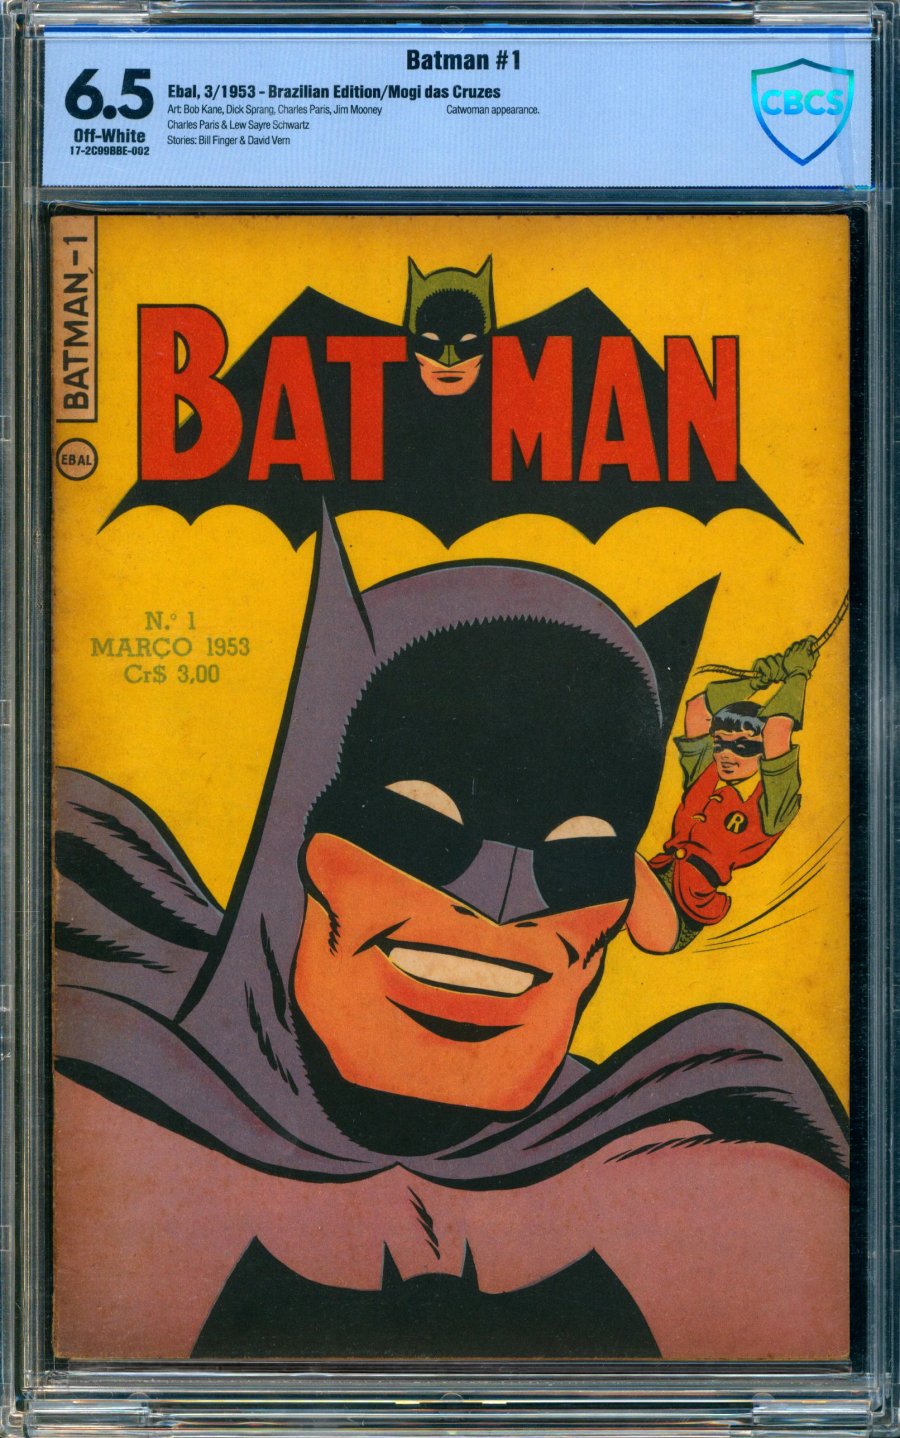 ComicConnect - BATMAN (1953- Brazil) #1 - CBCS FN+: 